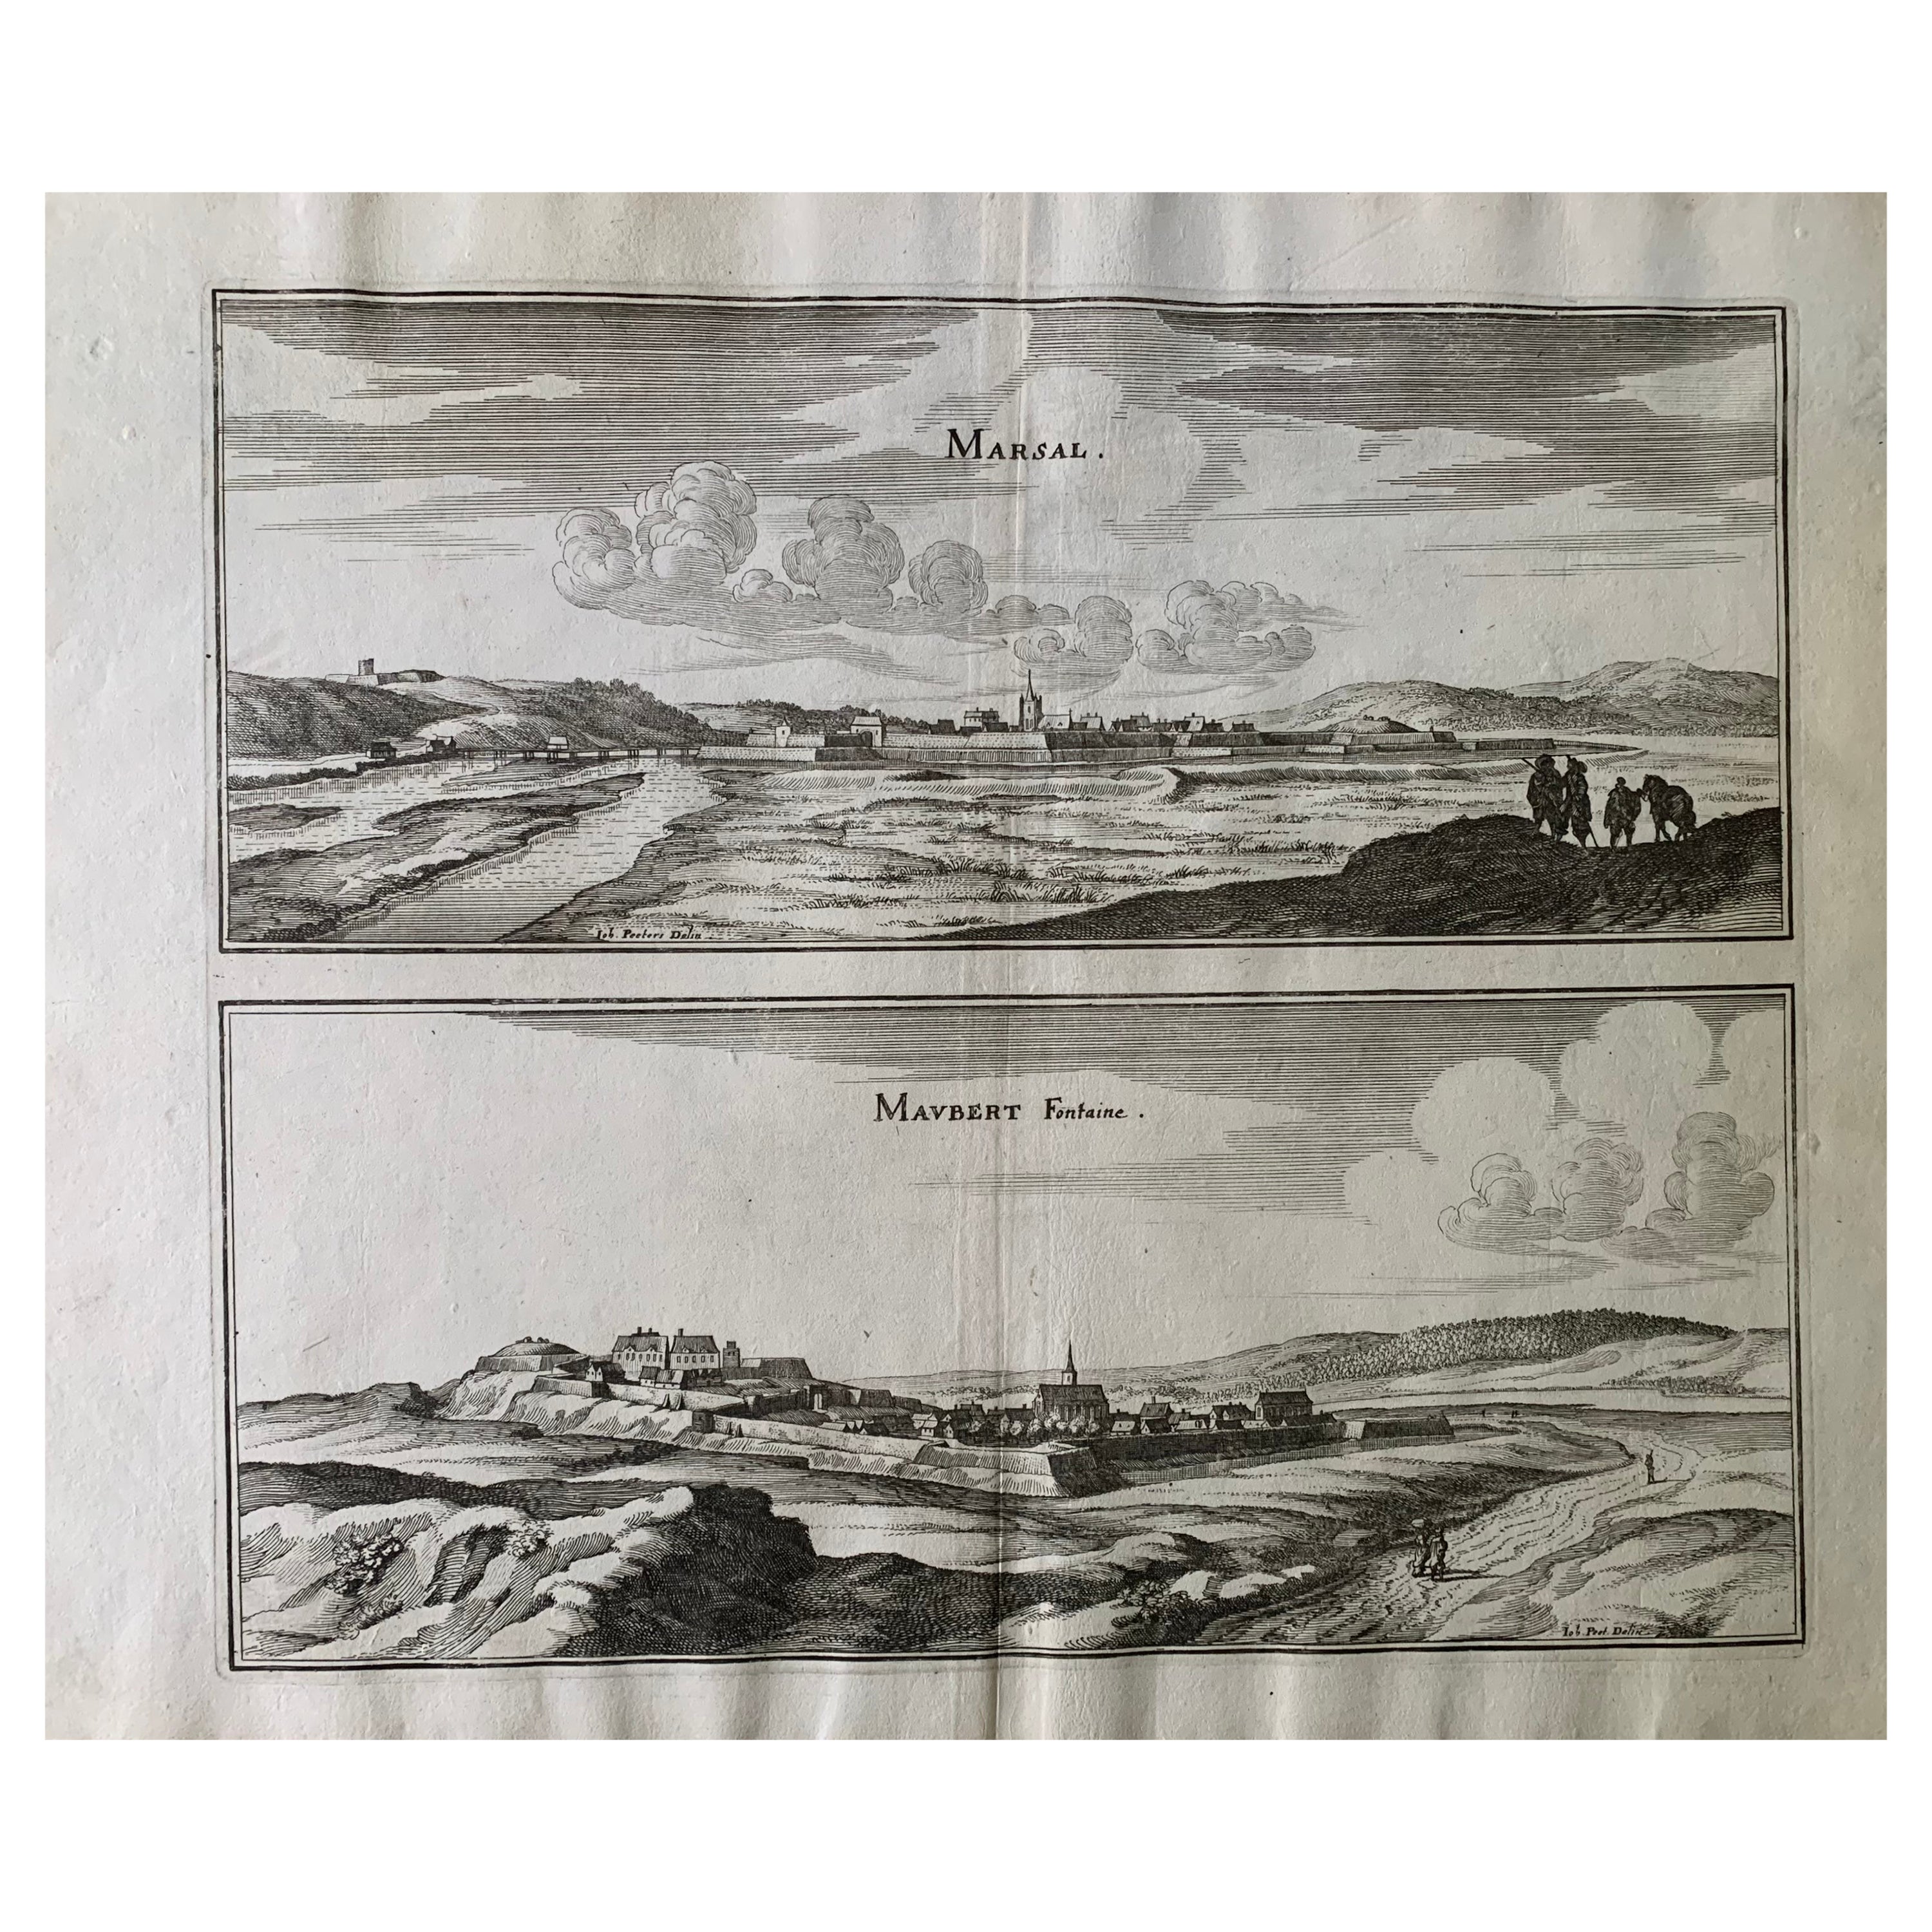 Topographische Karte des 17. Jahrhunderts, Champagne-Ardenne, Marsal, Maubert Iohan Peeters im Angebot